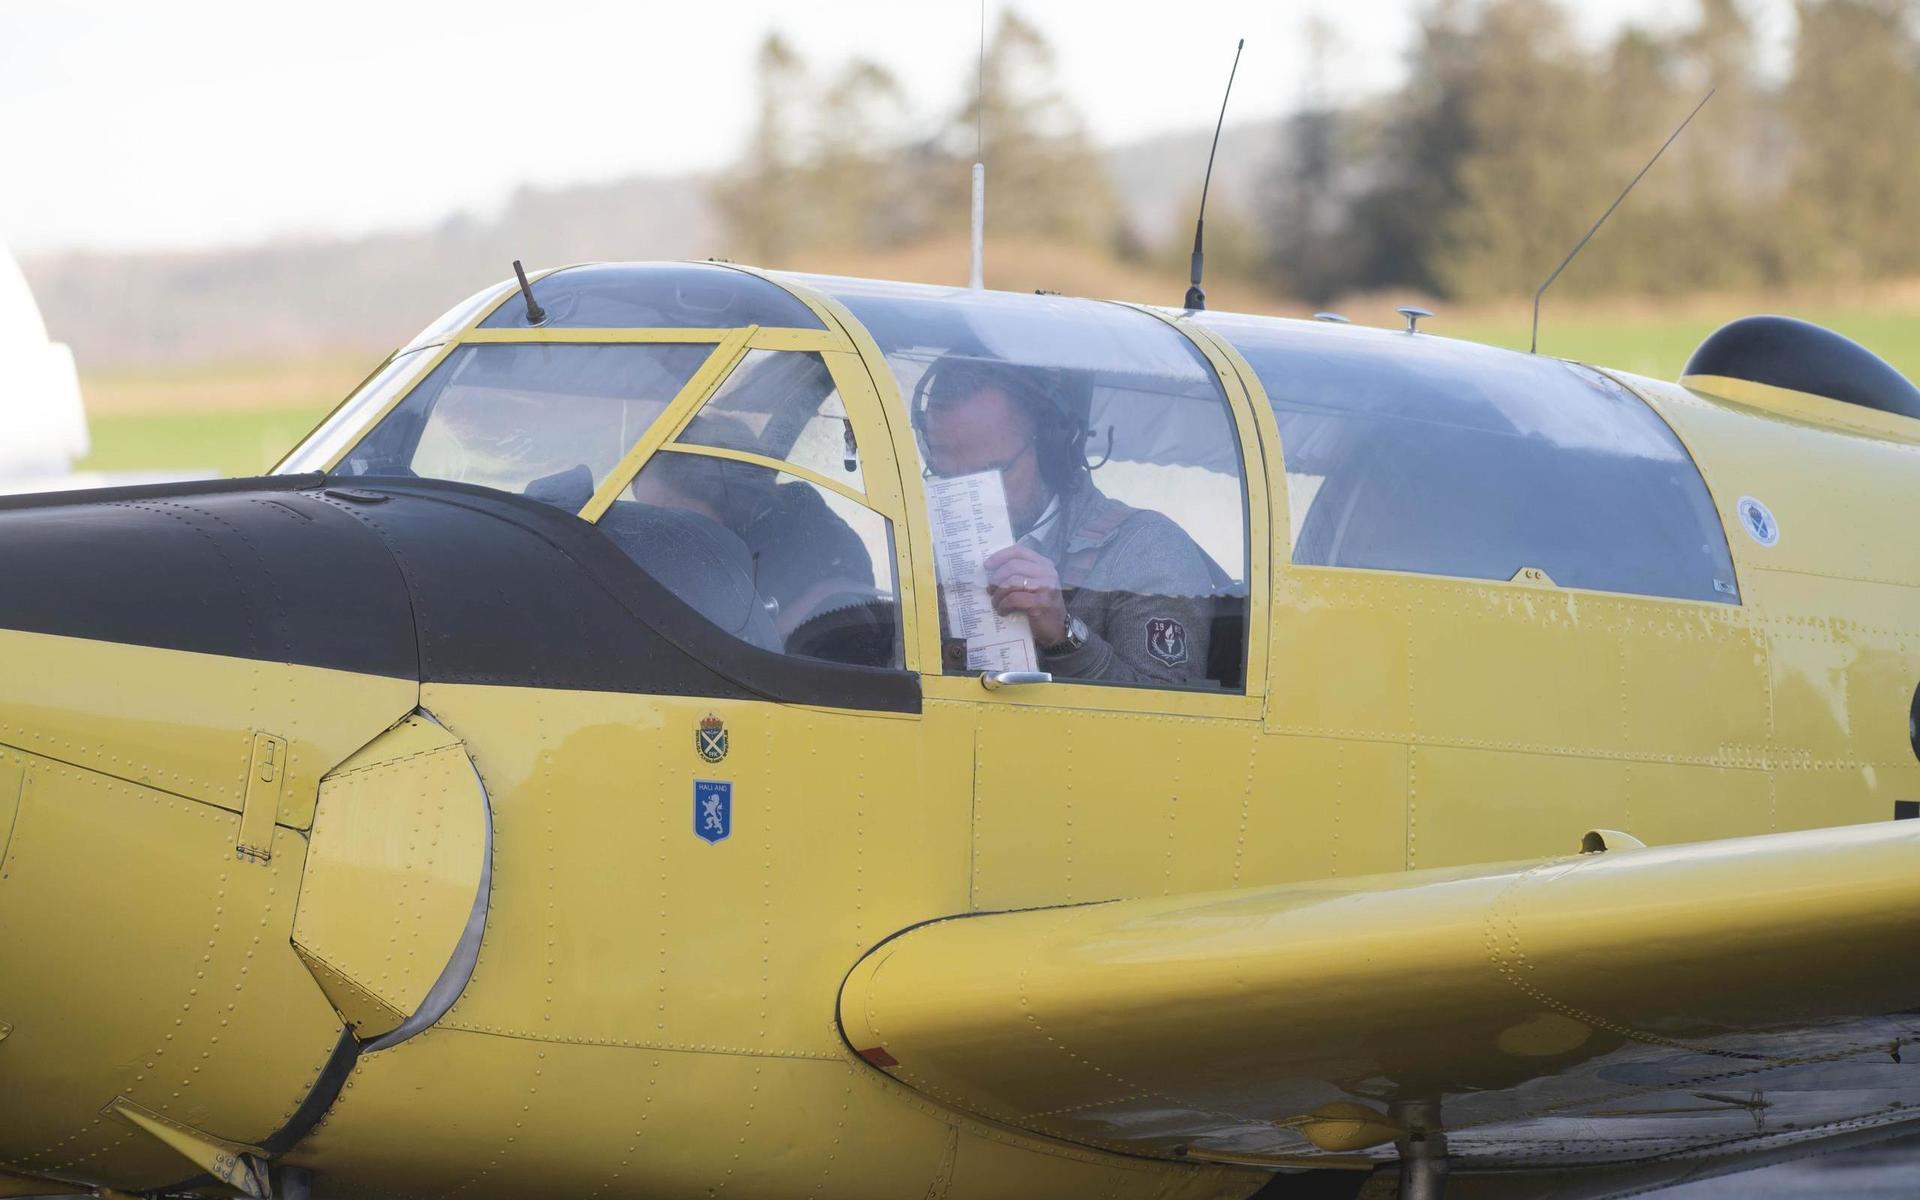 Mats Johansson flyger gärna Safiren några gånger i veckan. ”Flygandet är en färskvara, man behöver träna” säger han.